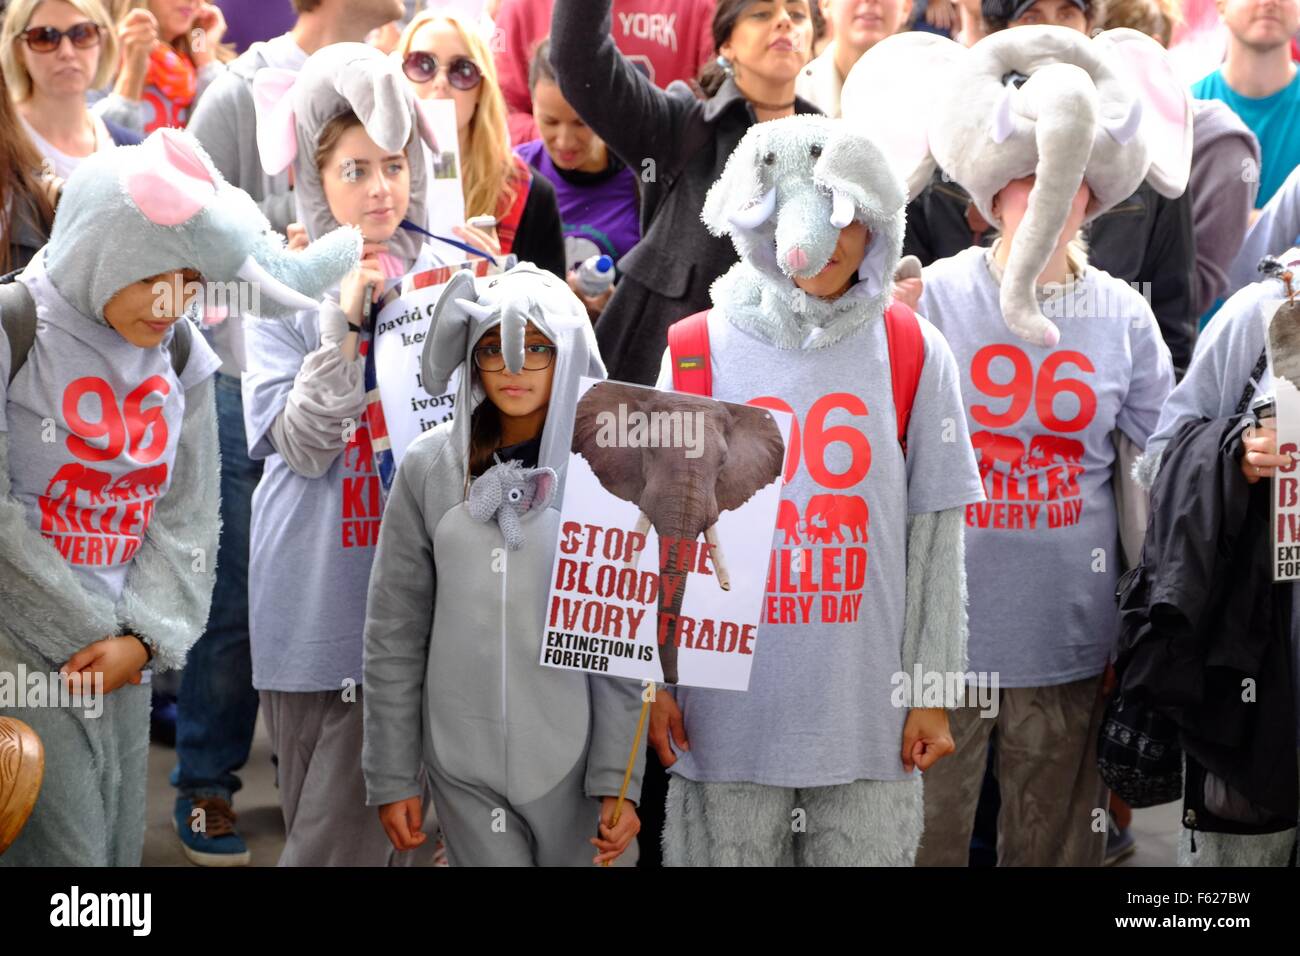 Marche Mondiale pour les éléphants et rhinocéros. Démo à Londres , 96 personnes s'habillent de costumes d'éléphants qui représente l'estimation du nombre d'éléphants tués chaque jour en Afrique pour leur ivoire, soulignant la nécessité d'agir pour sauver les espèces menacées. D'interieurélectronique Banque D'Images